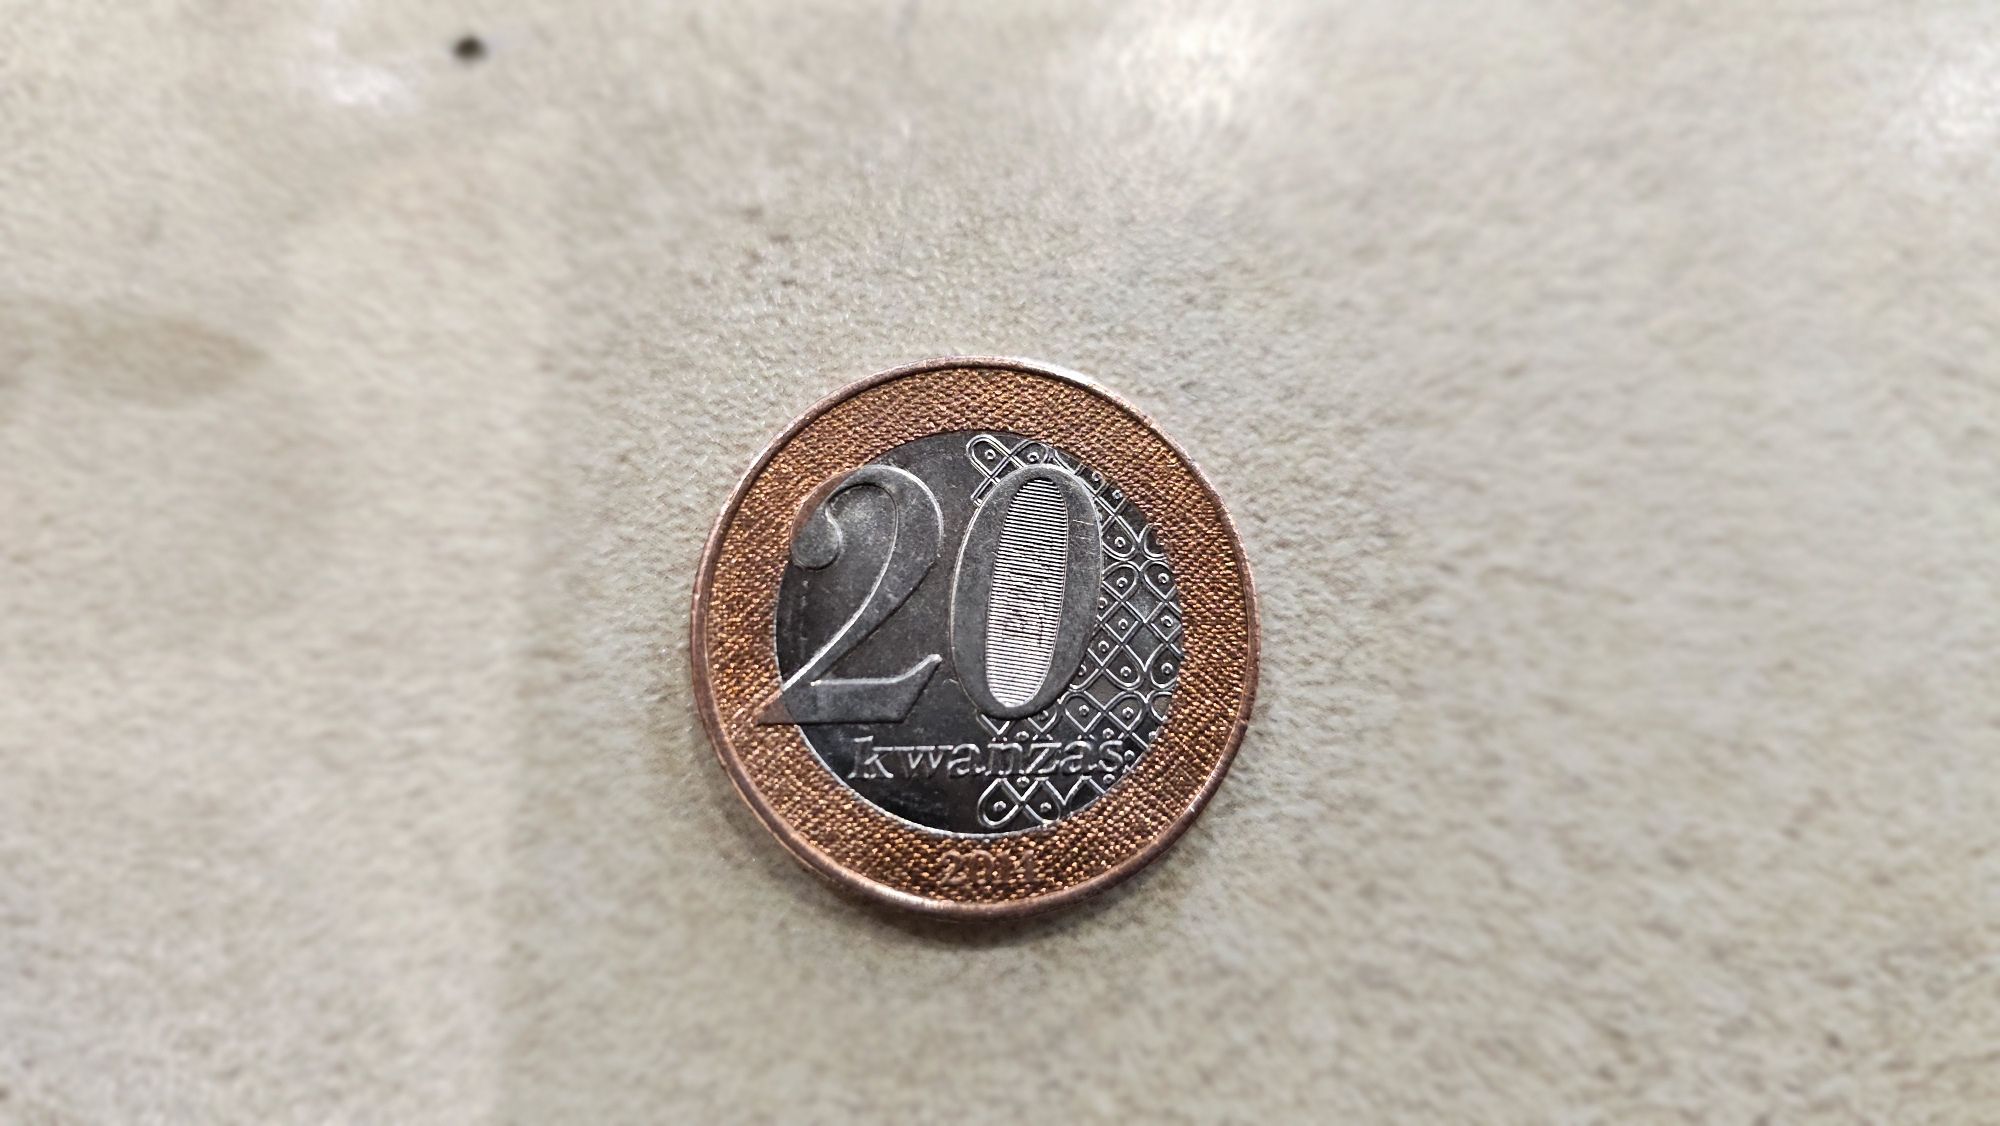 Монеты Анголы 200, 100, 50, 20, 10, 5 kvanzas